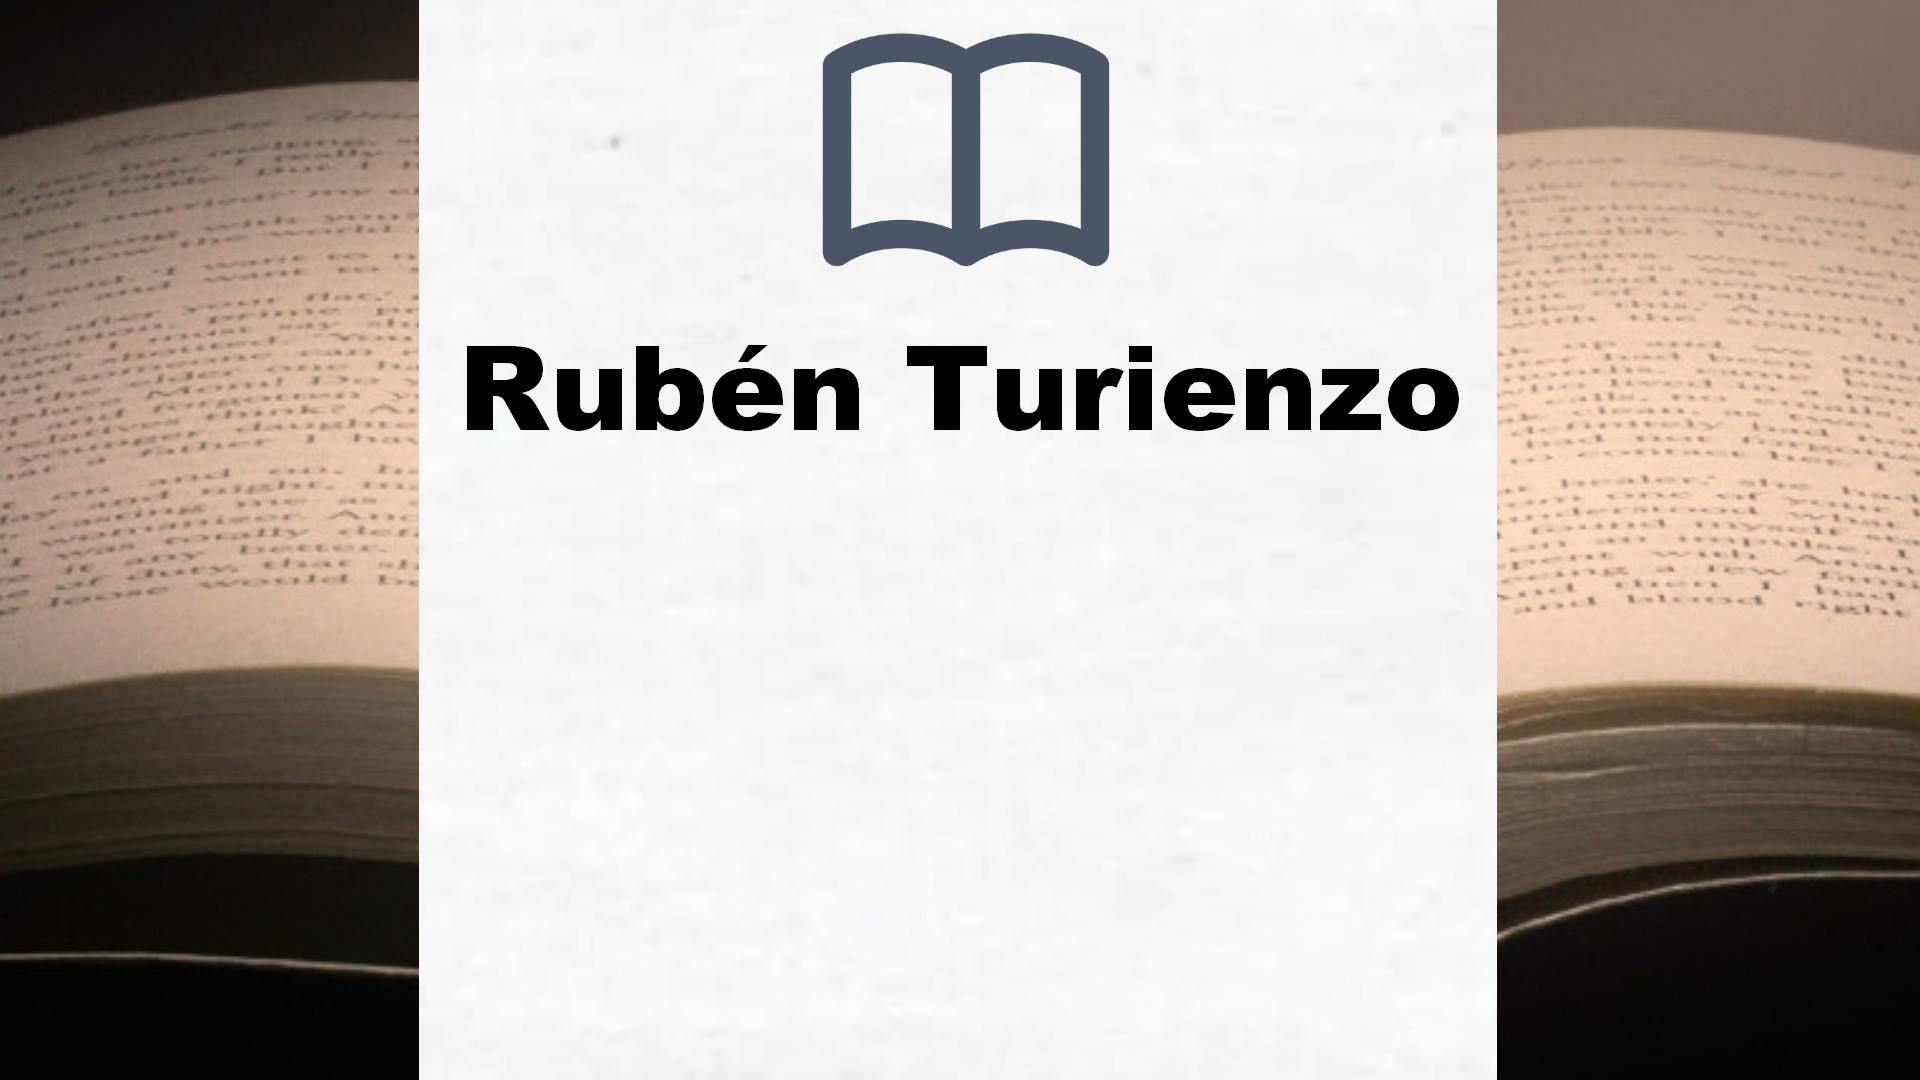 Libros Rubén Turienzo